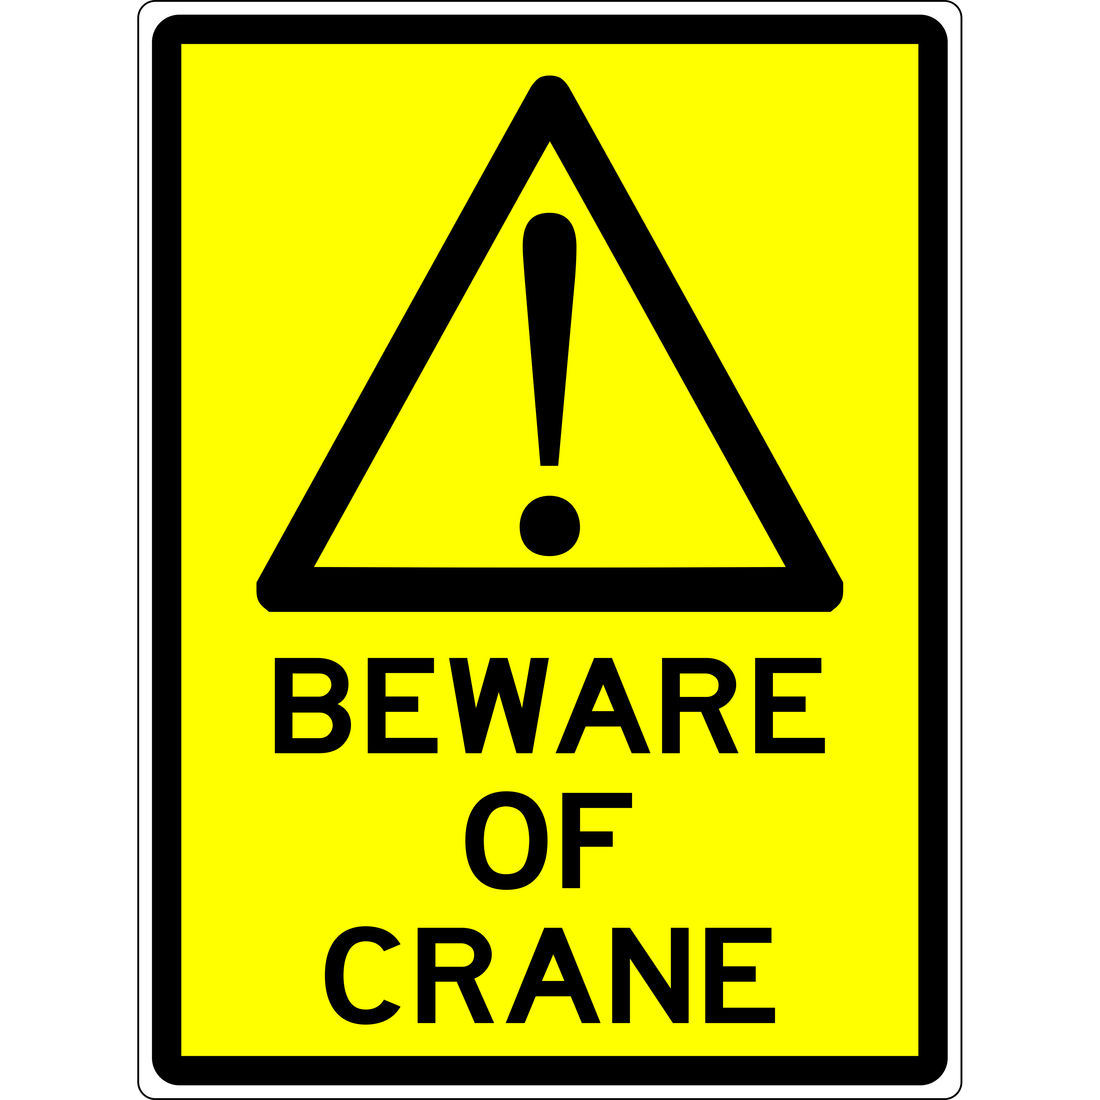 WARNING - BEWARE OF CRANE